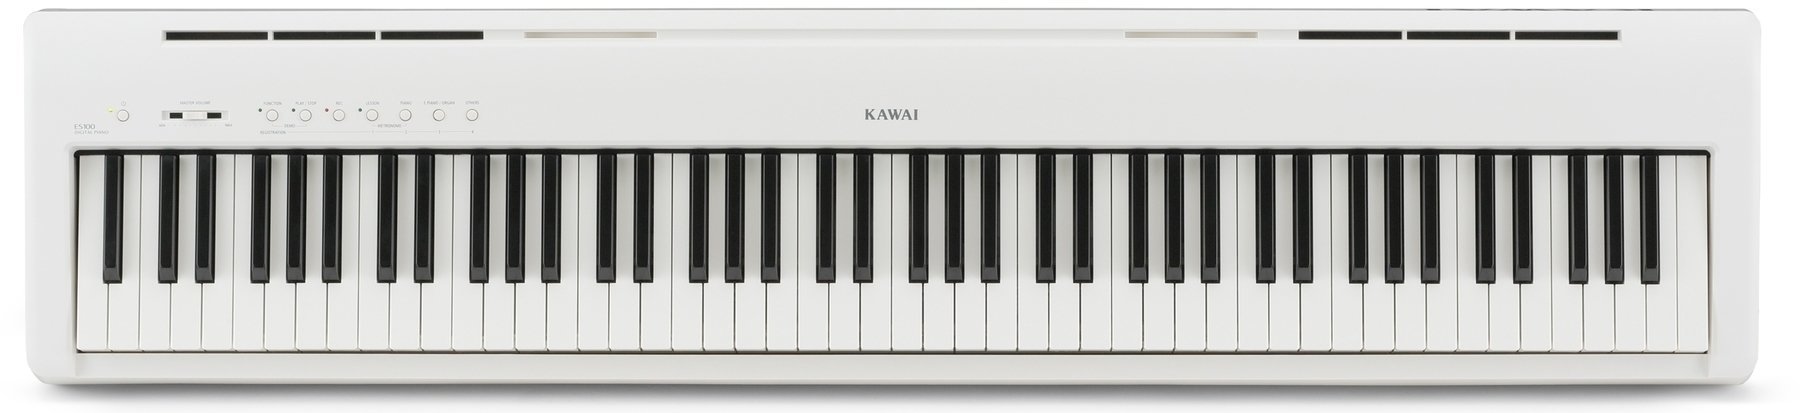 Piano digital de palco Kawai ES100W Portable Digital Piano